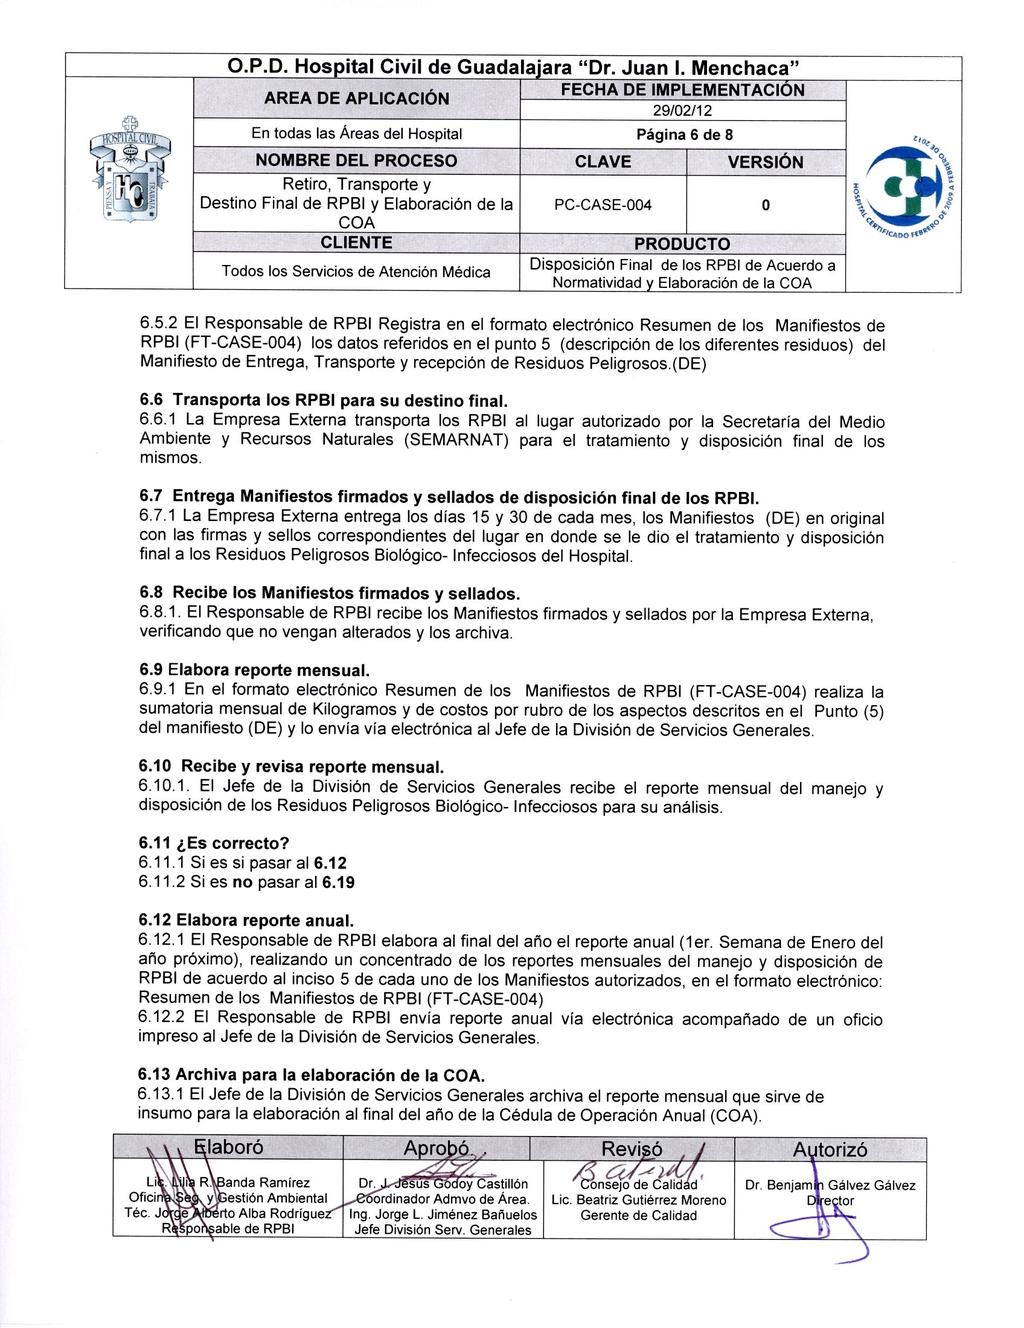 ,,1 í it A lifla.7` 0 1-?n I.' '117. li. t \, N_II,(.,.P.D. Hospital Civil de Guadalajara "Dr. Juan I.